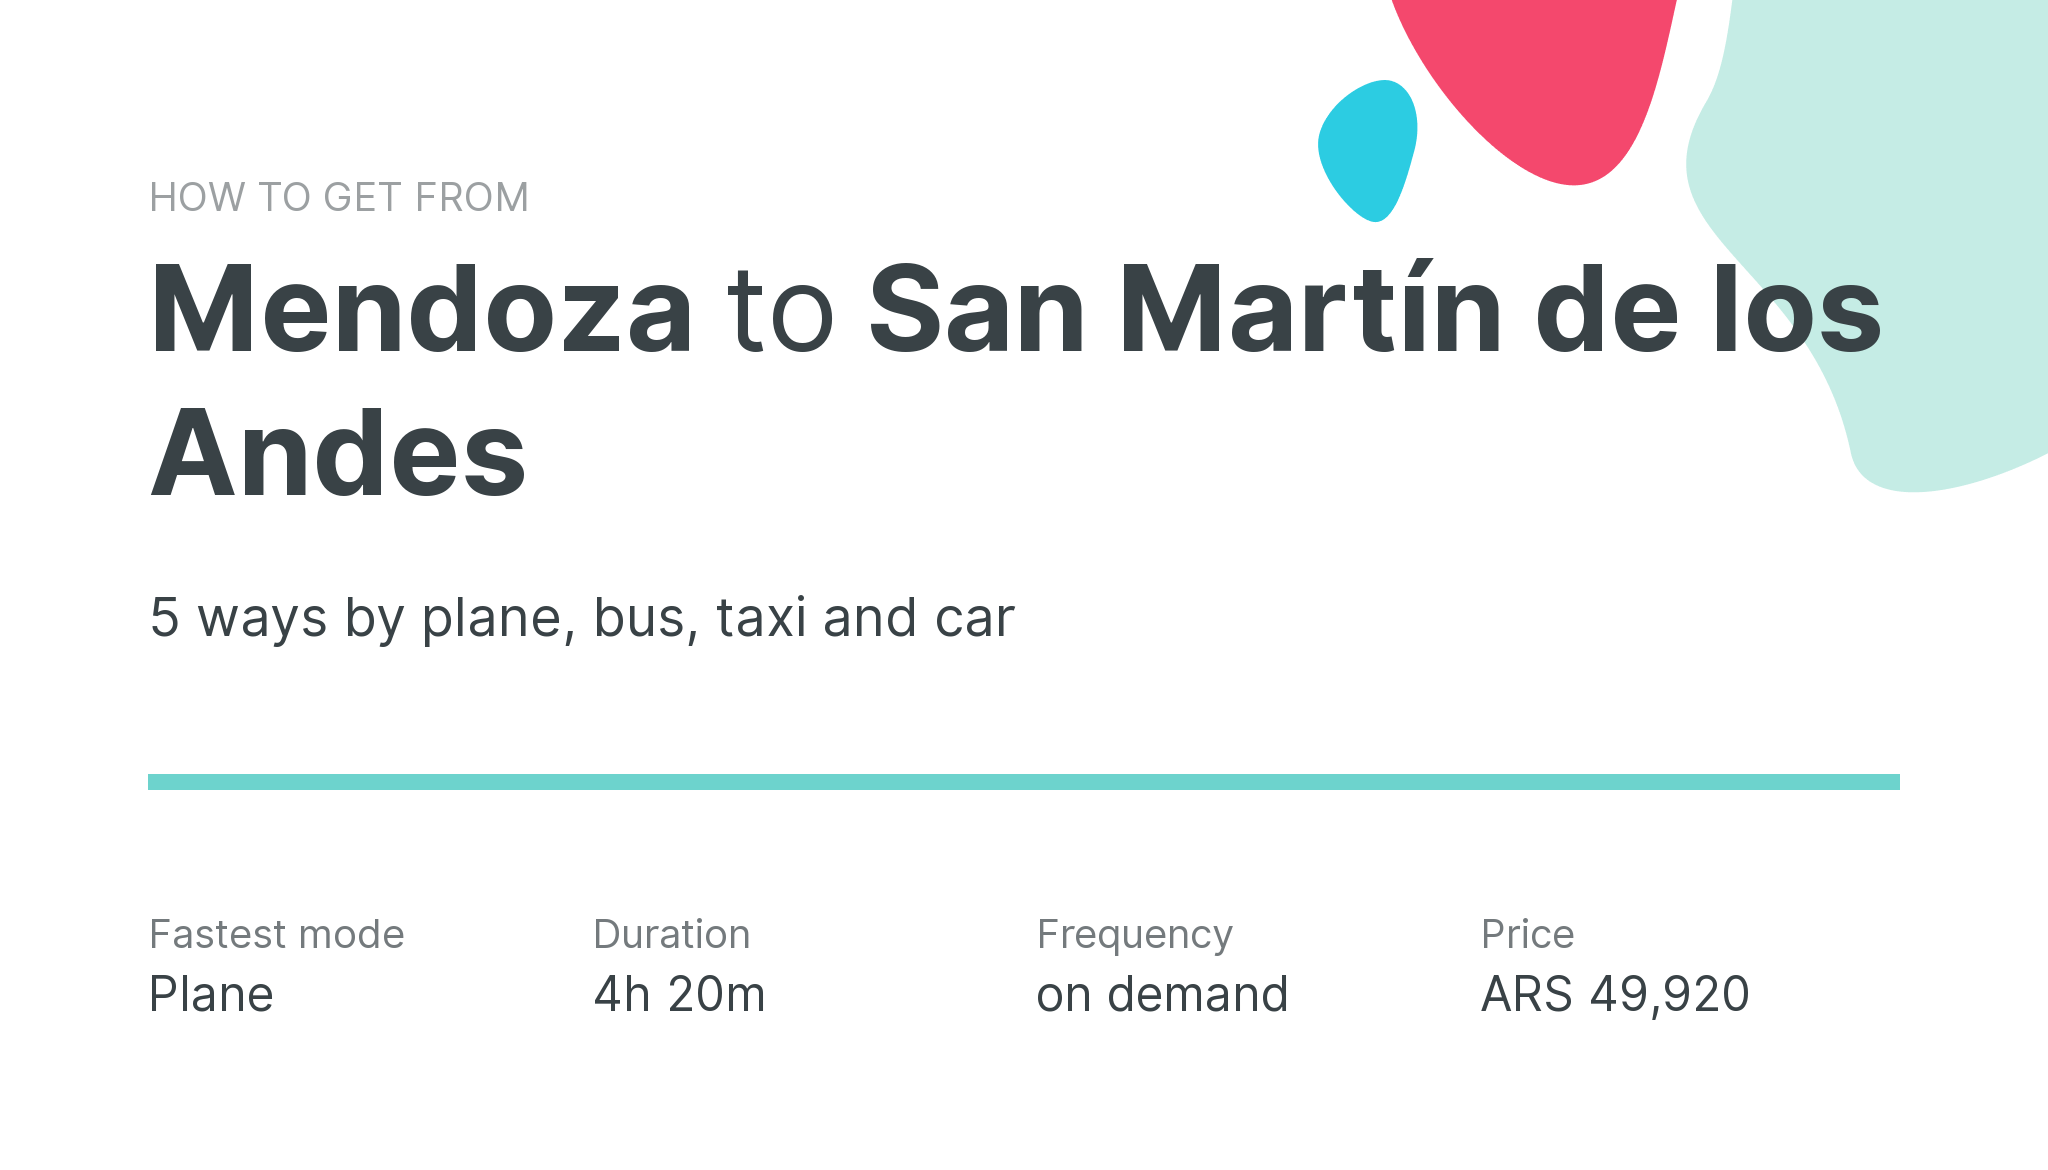 How do I get from Mendoza to San Martín de los Andes